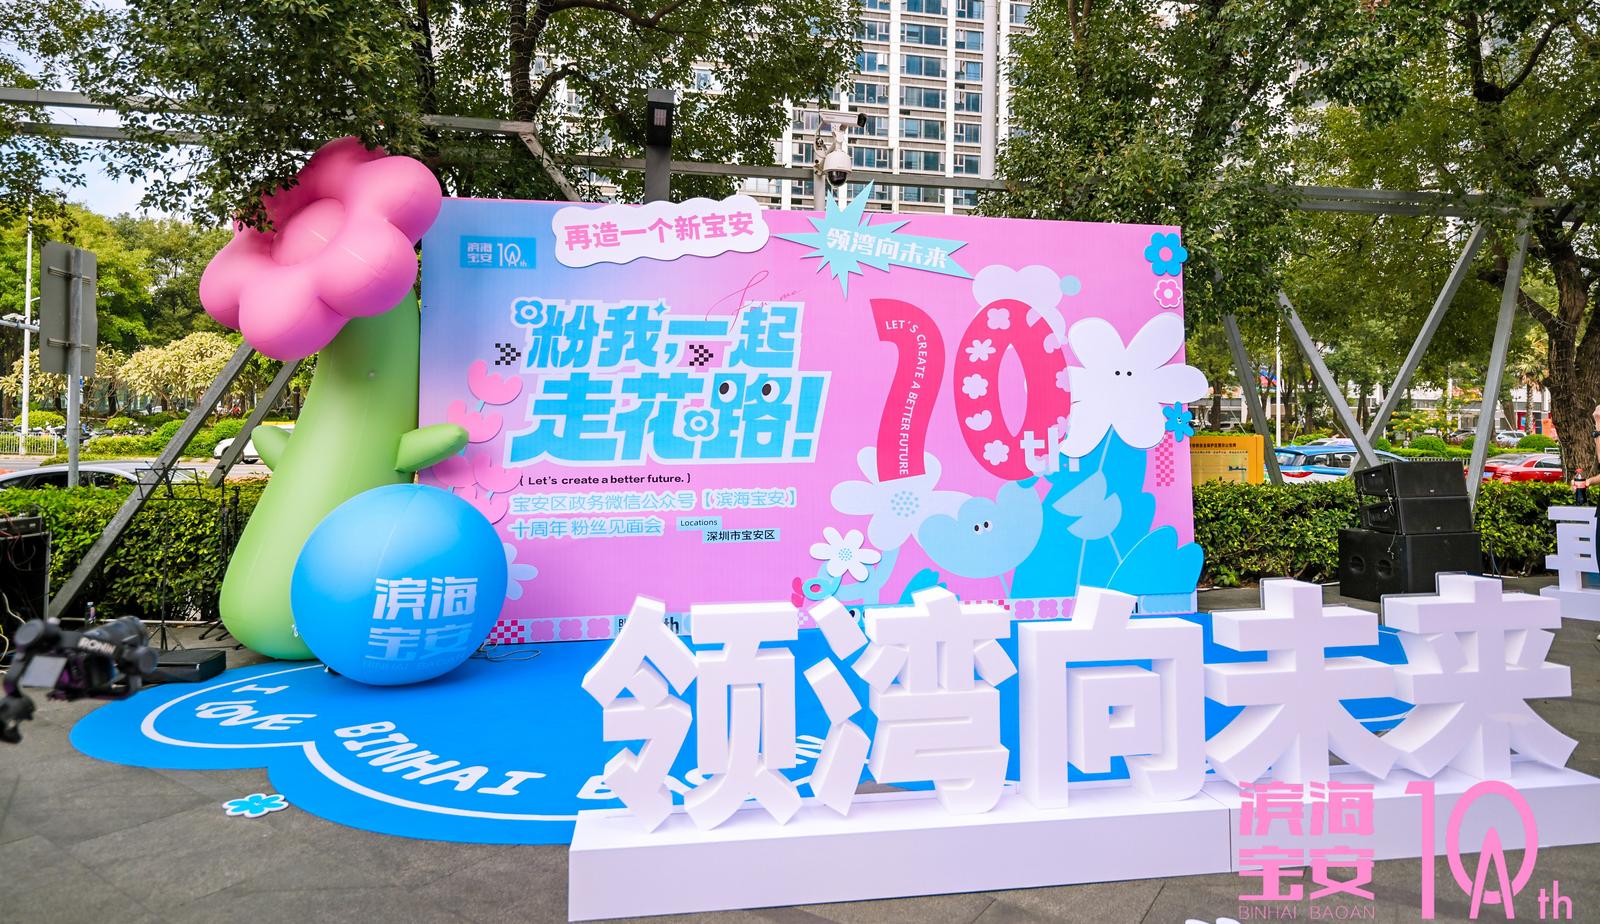 “滨海宝安”政务微信十周年粉丝见面会活动顺利开展